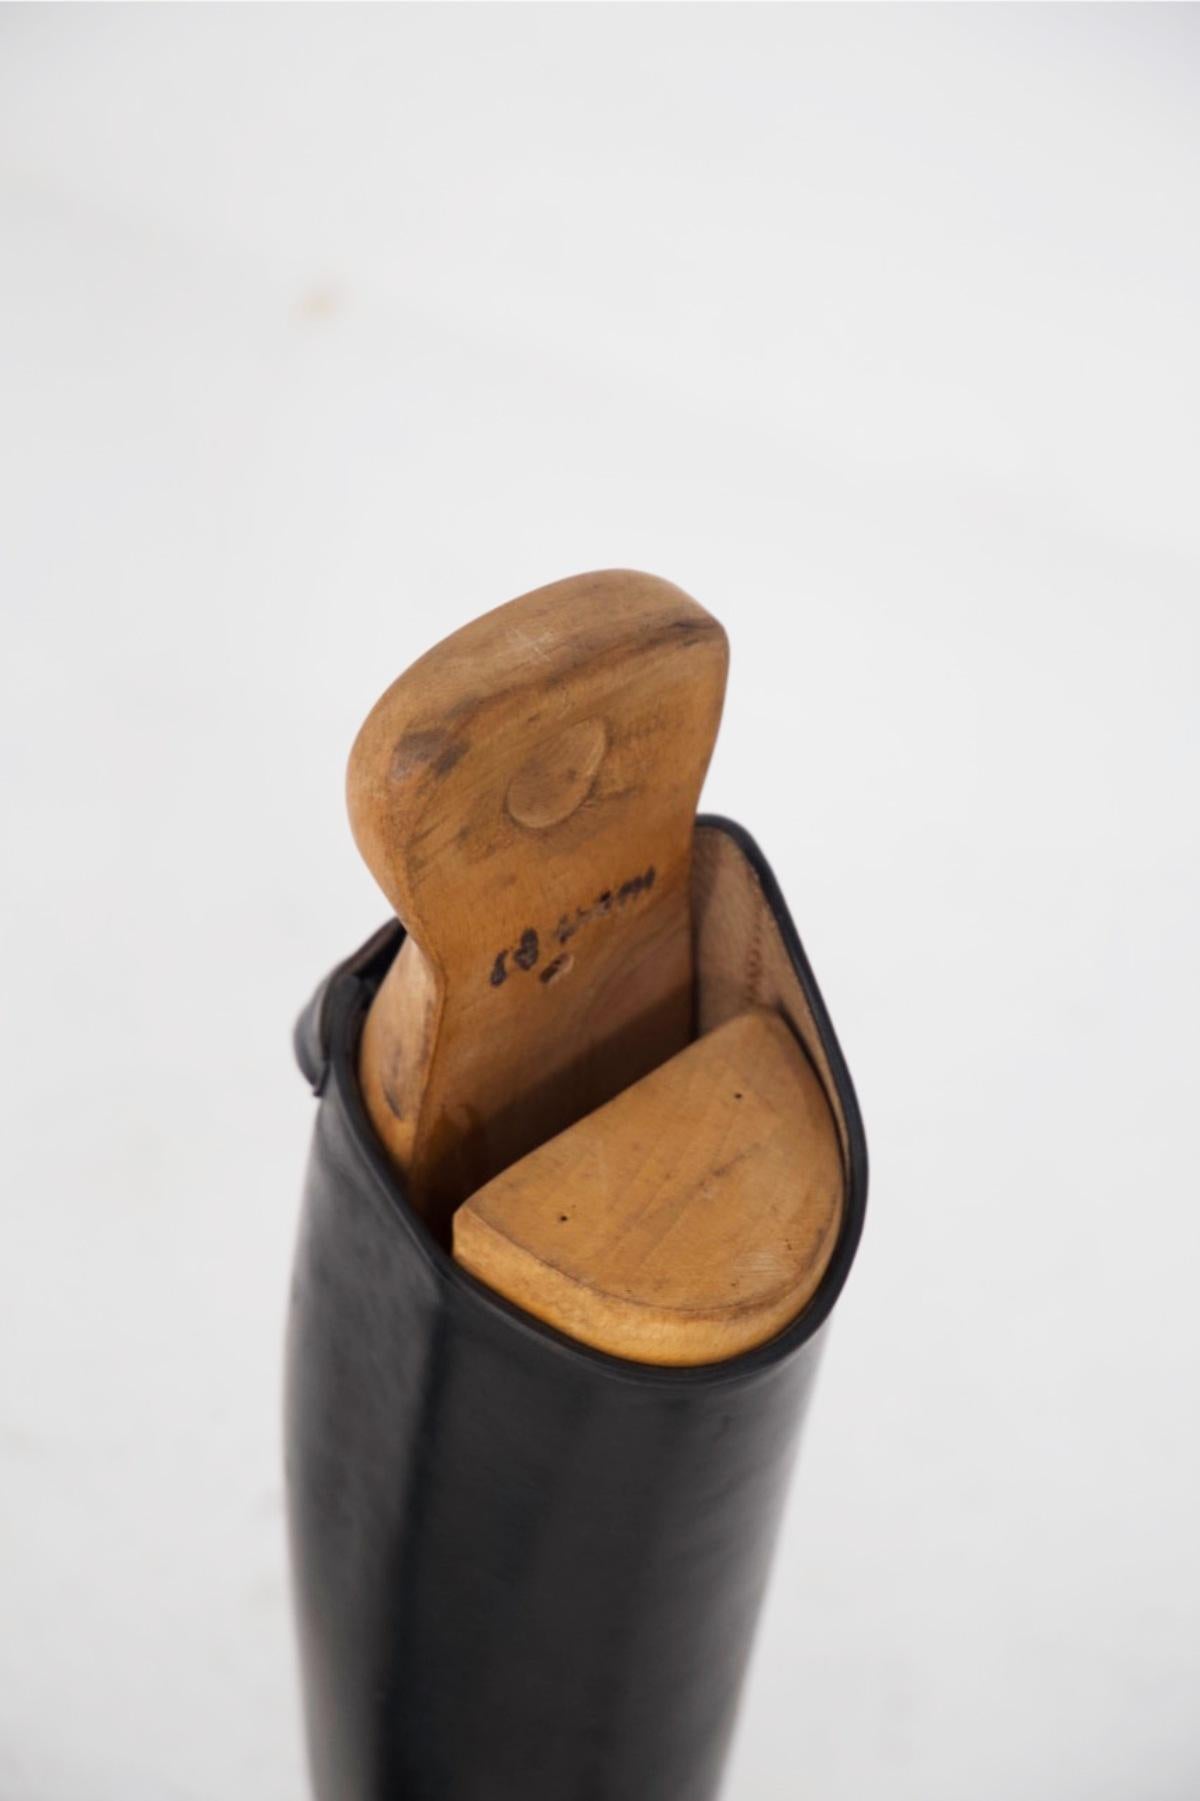 Magnifique paire de bottes en cuir noir conçues dans les années 1990, fabriquées en Italie.
Ces bottes sont des bottes d'équitation classiques, entièrement fabriquées en cuir noir brillant et durable.
Le talon est bas, mais légèrement surélevé pour